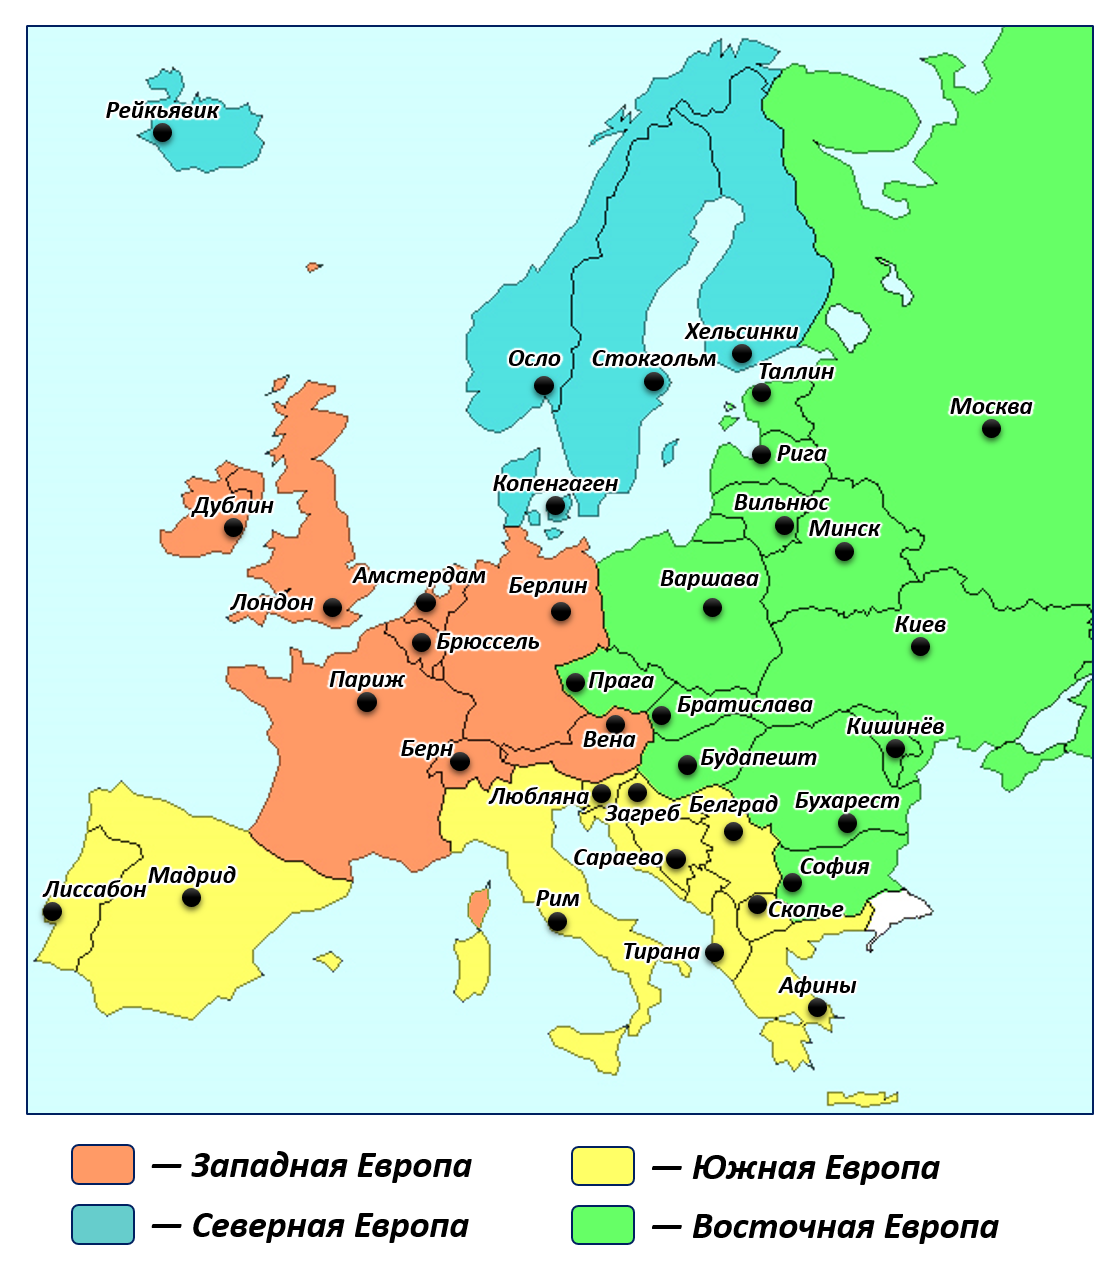 Карта зарубежной Европы Северная Европа Восточная Западная Южная. Границы регионов Европы на контурной карте. Северная Европа Южная Европа Западная Европа Восточная Европа карта. Границы регионов зарубежной Европы на карте.